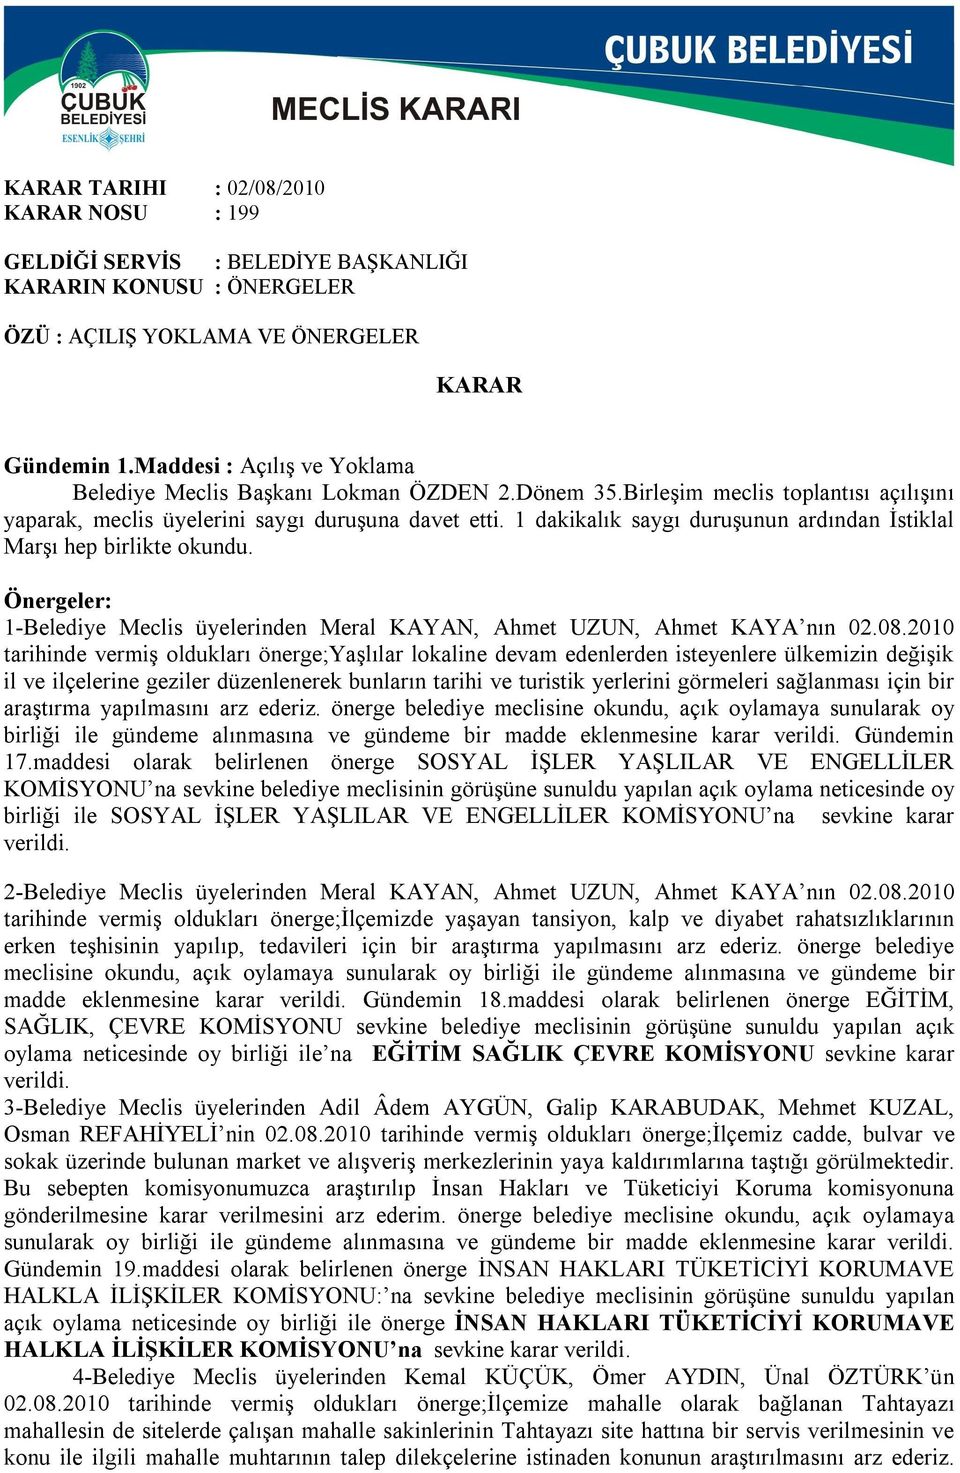 Önergeler: 1-Belediye Meclis üyelerinden Meral KAYAN, Ahmet UZUN, Ahmet KAYA nın 02.08.